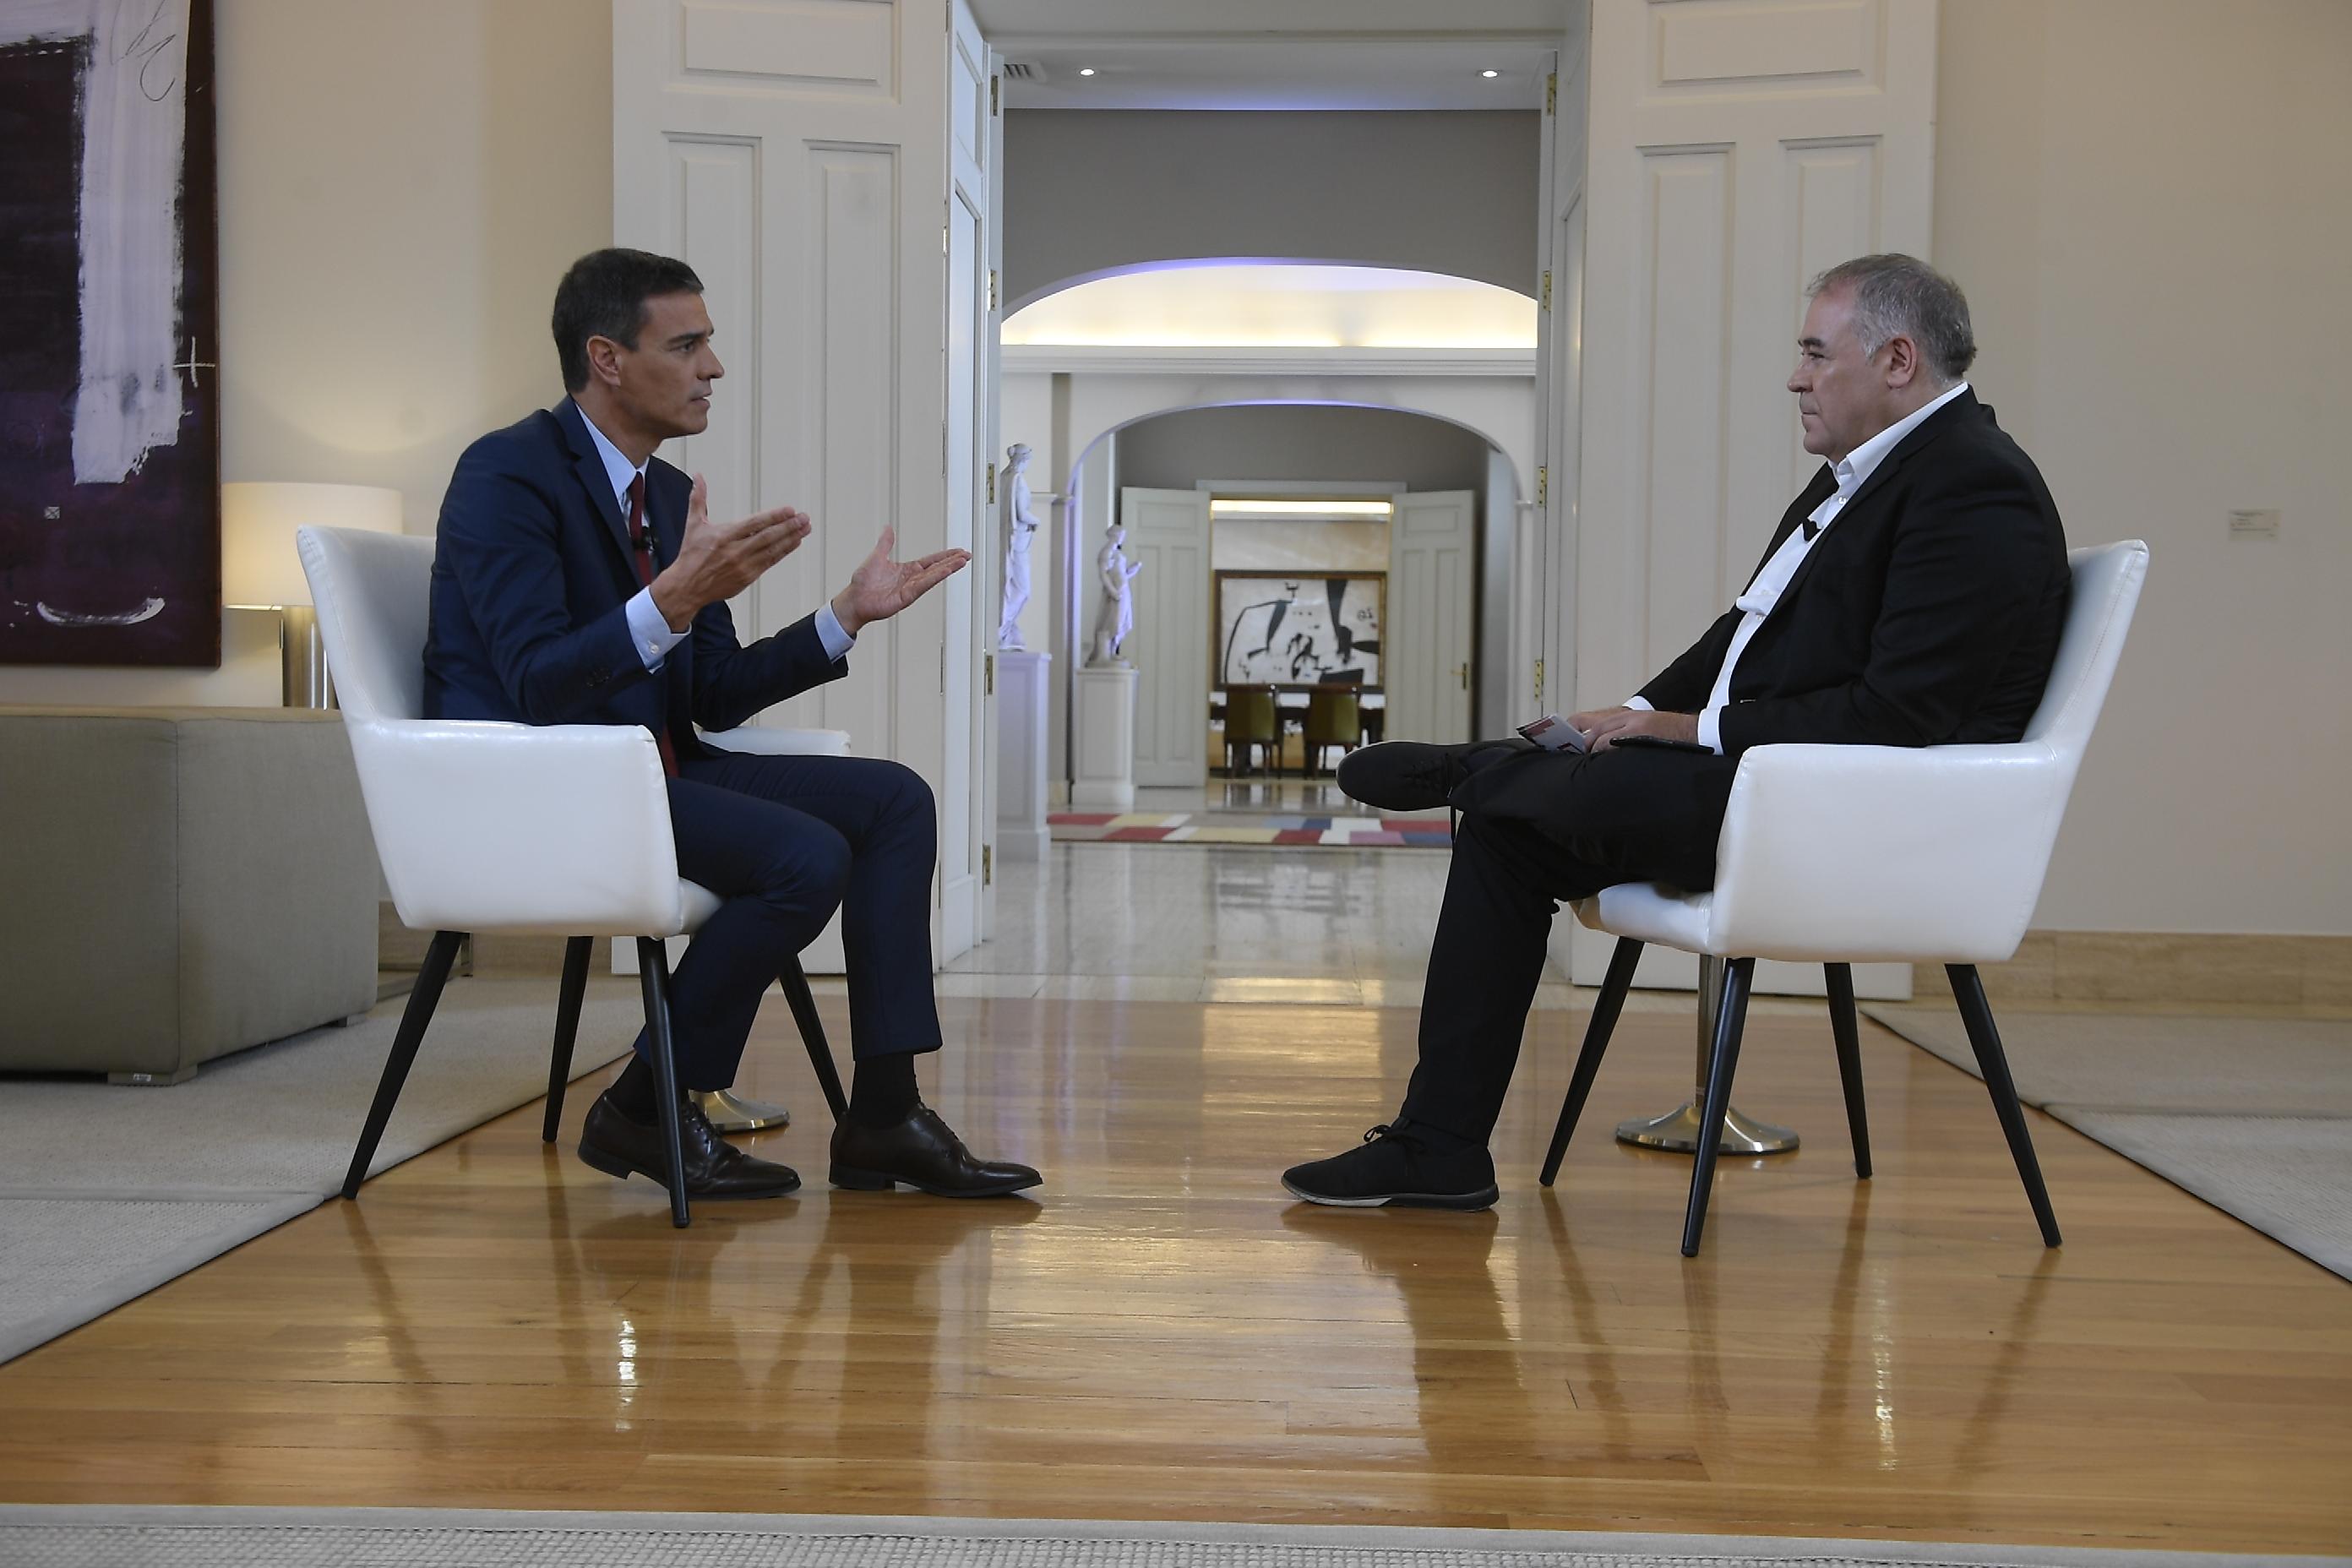 El presidente Pedro Sánchez durante su entrevista en 'Al Rojo Vivo' realizada por Antonio García Ferreras. La Moncloa